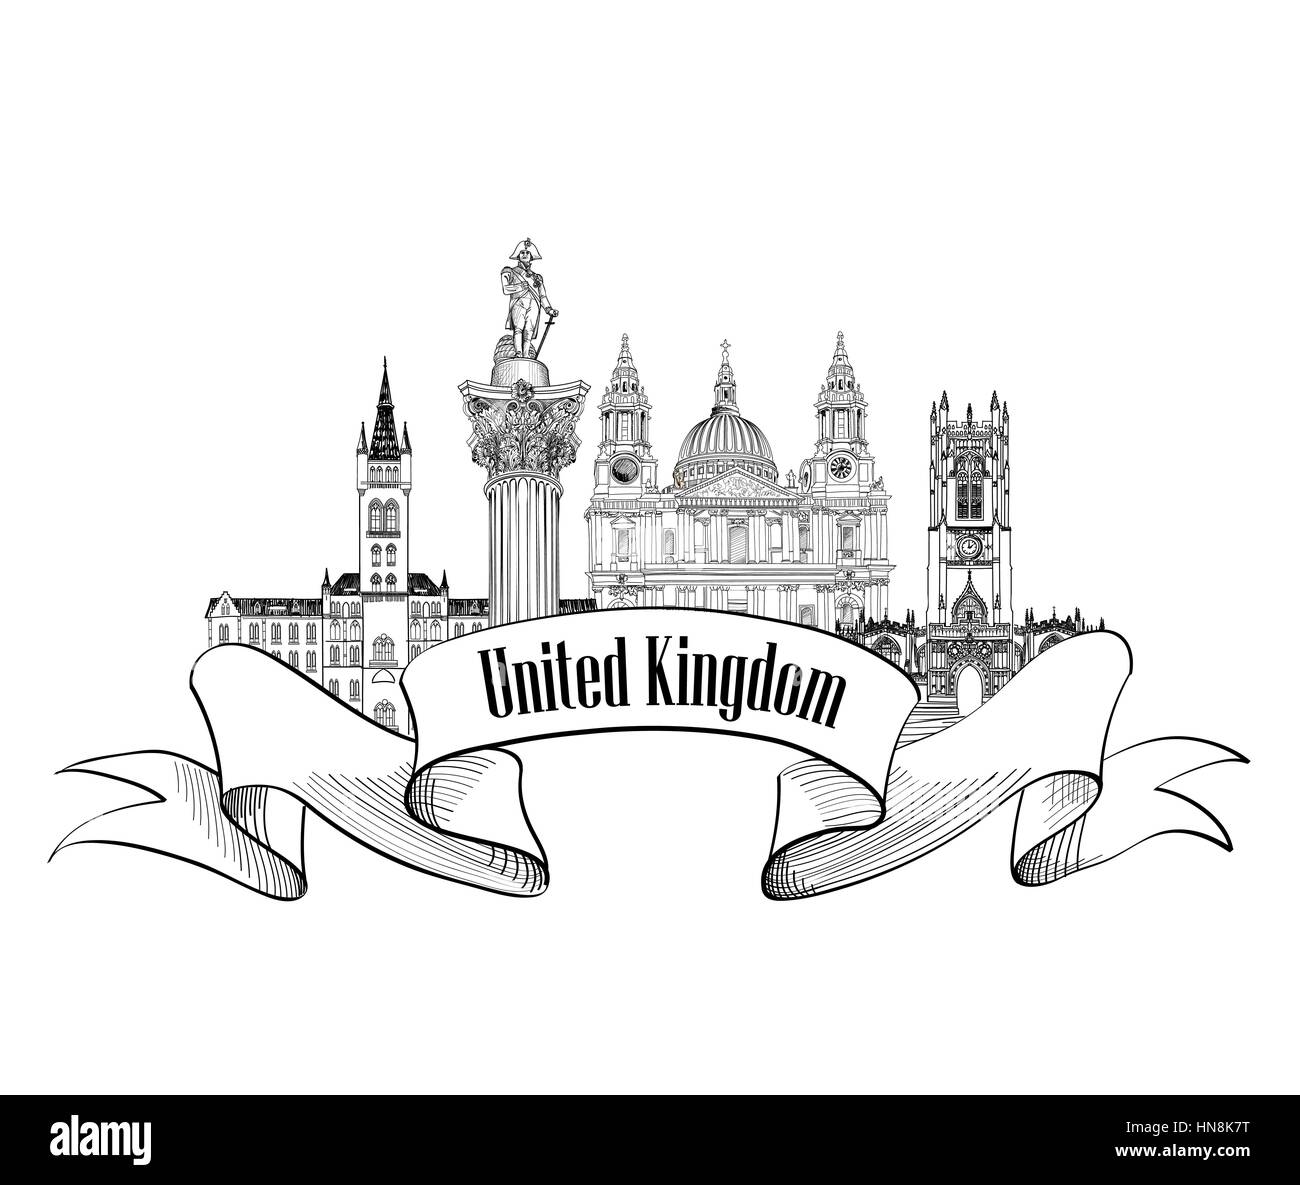 Regno Unito di Gran Bretagna etichetta. famoso english Architectural Landmarks. Inghilterra simbolo. visitare il sito web uk travel europe banner. Illustrazione Vettoriale